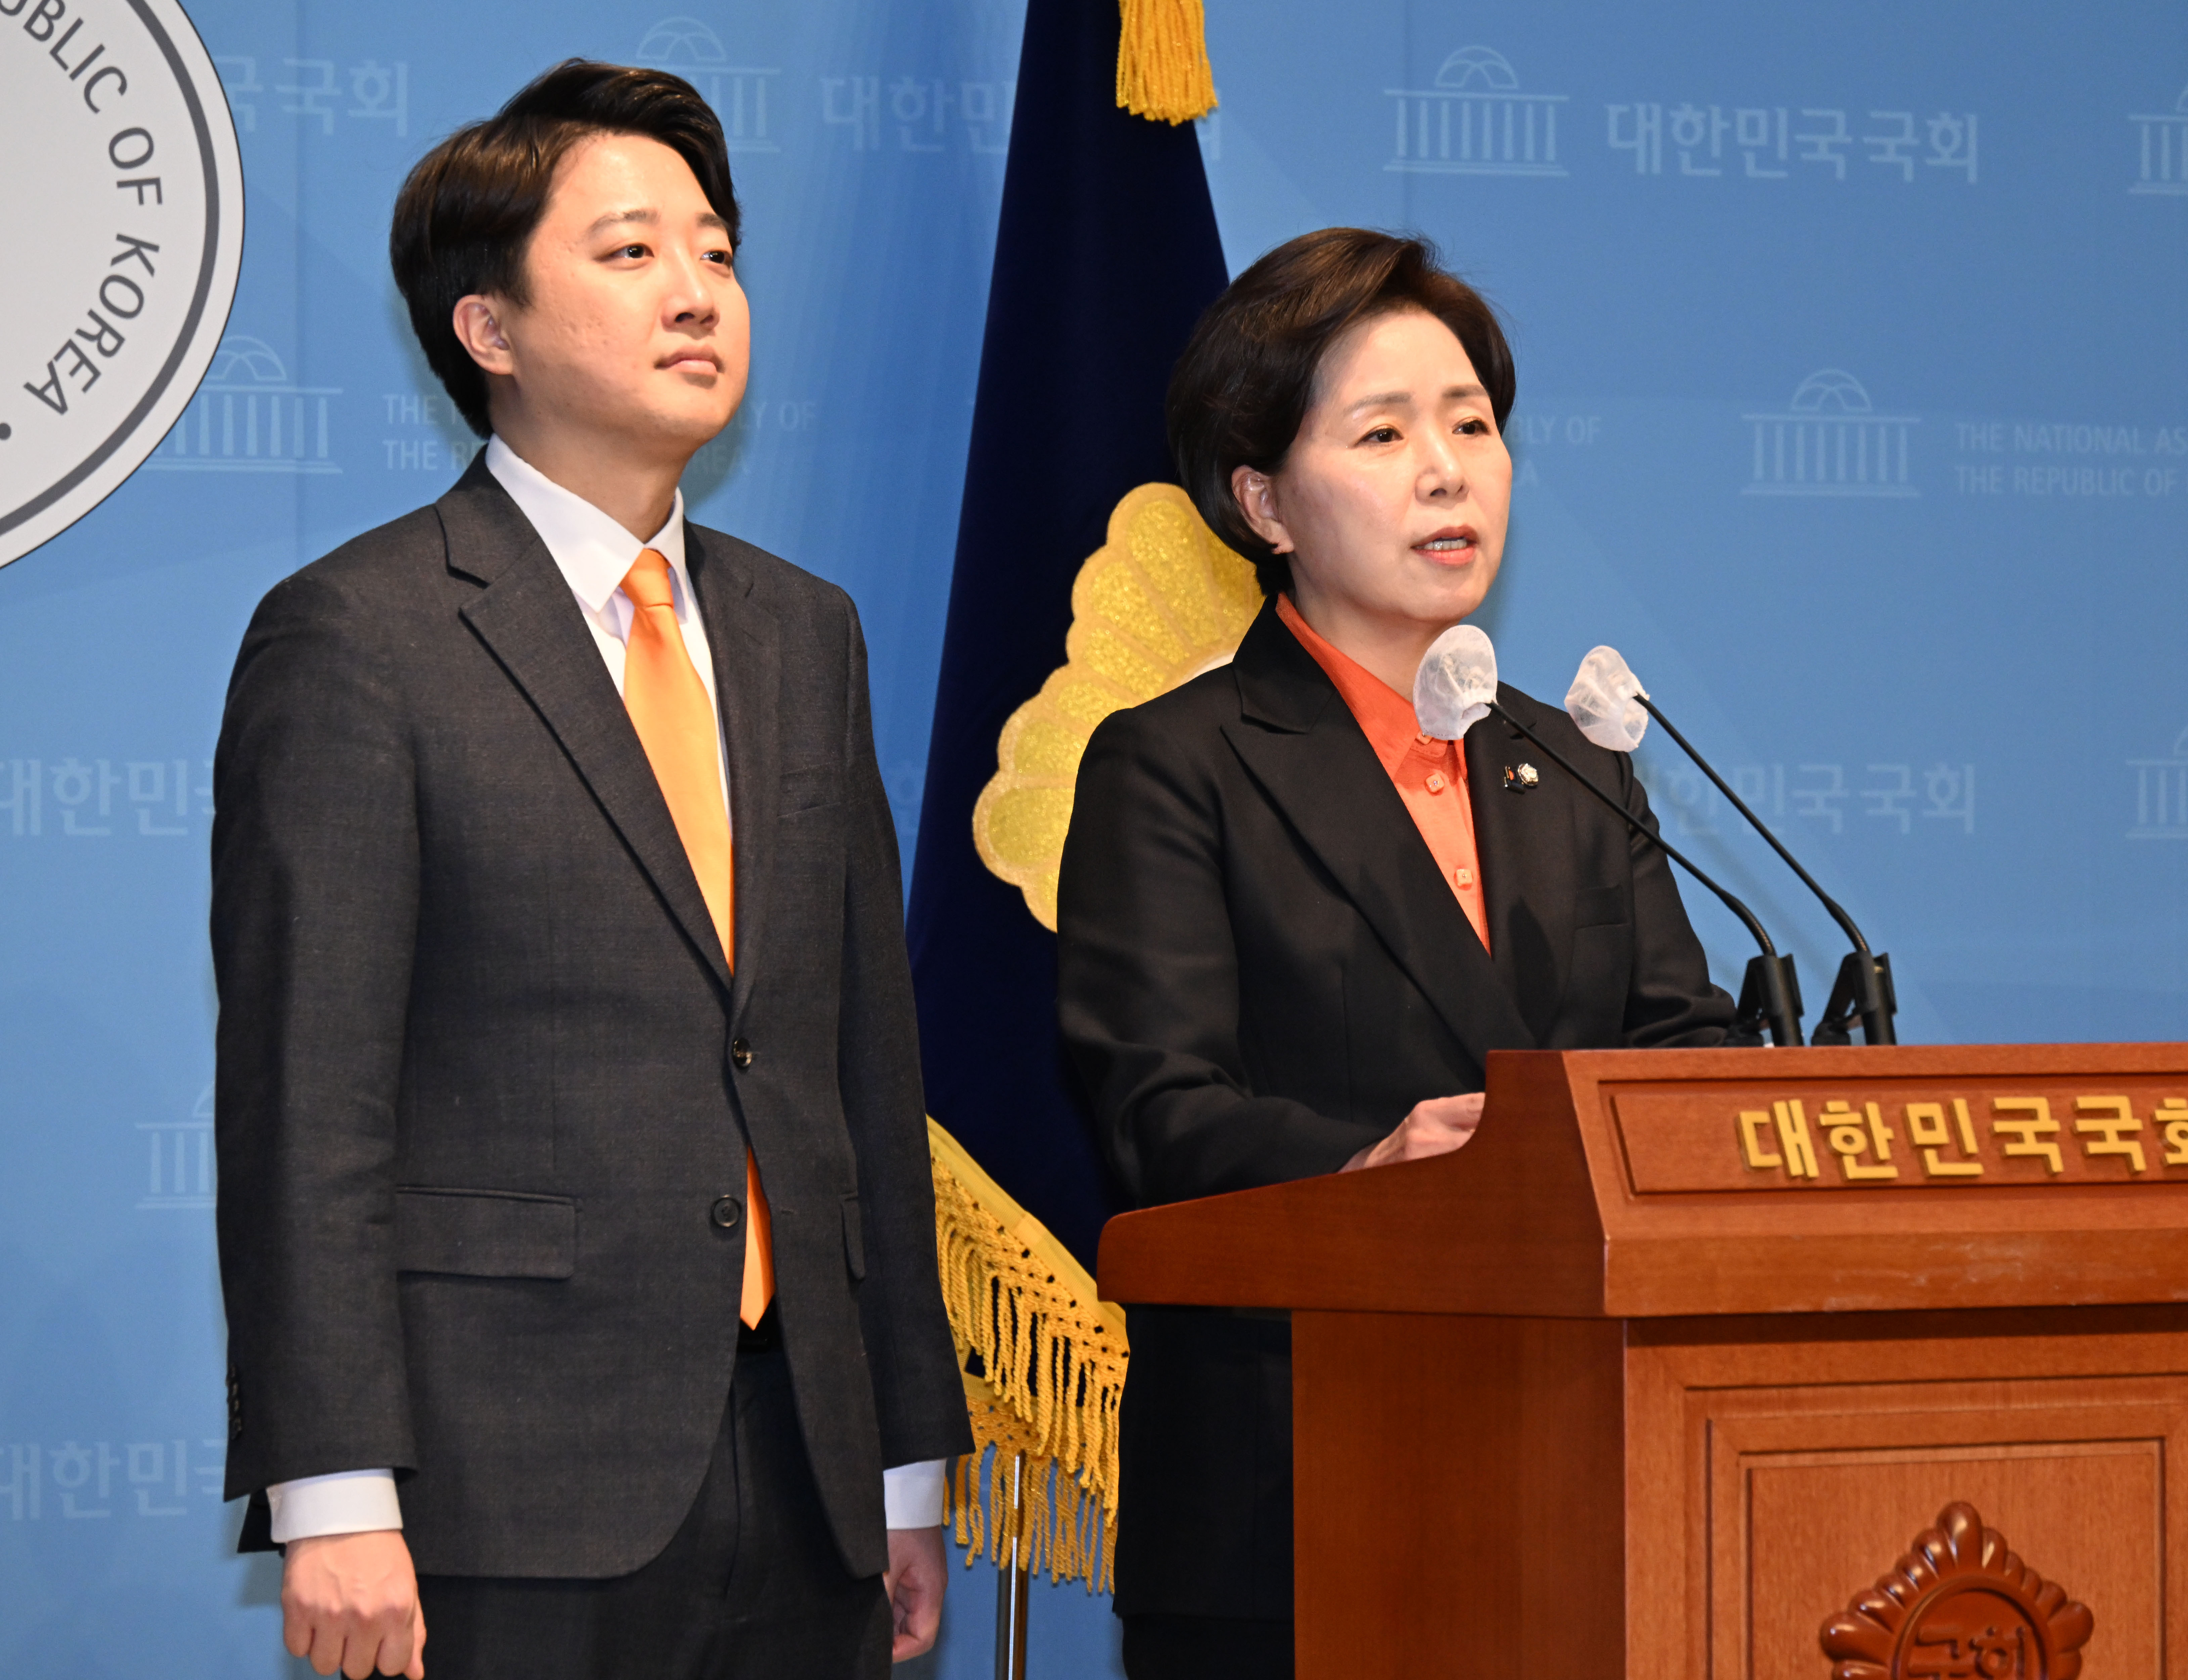 양향자(오른쪽) 한국의희망 대표와 이준석 개혁신당 대표가 국회 소통관에서 공동 기자회견을 하고 있다. 안주영 전문기자